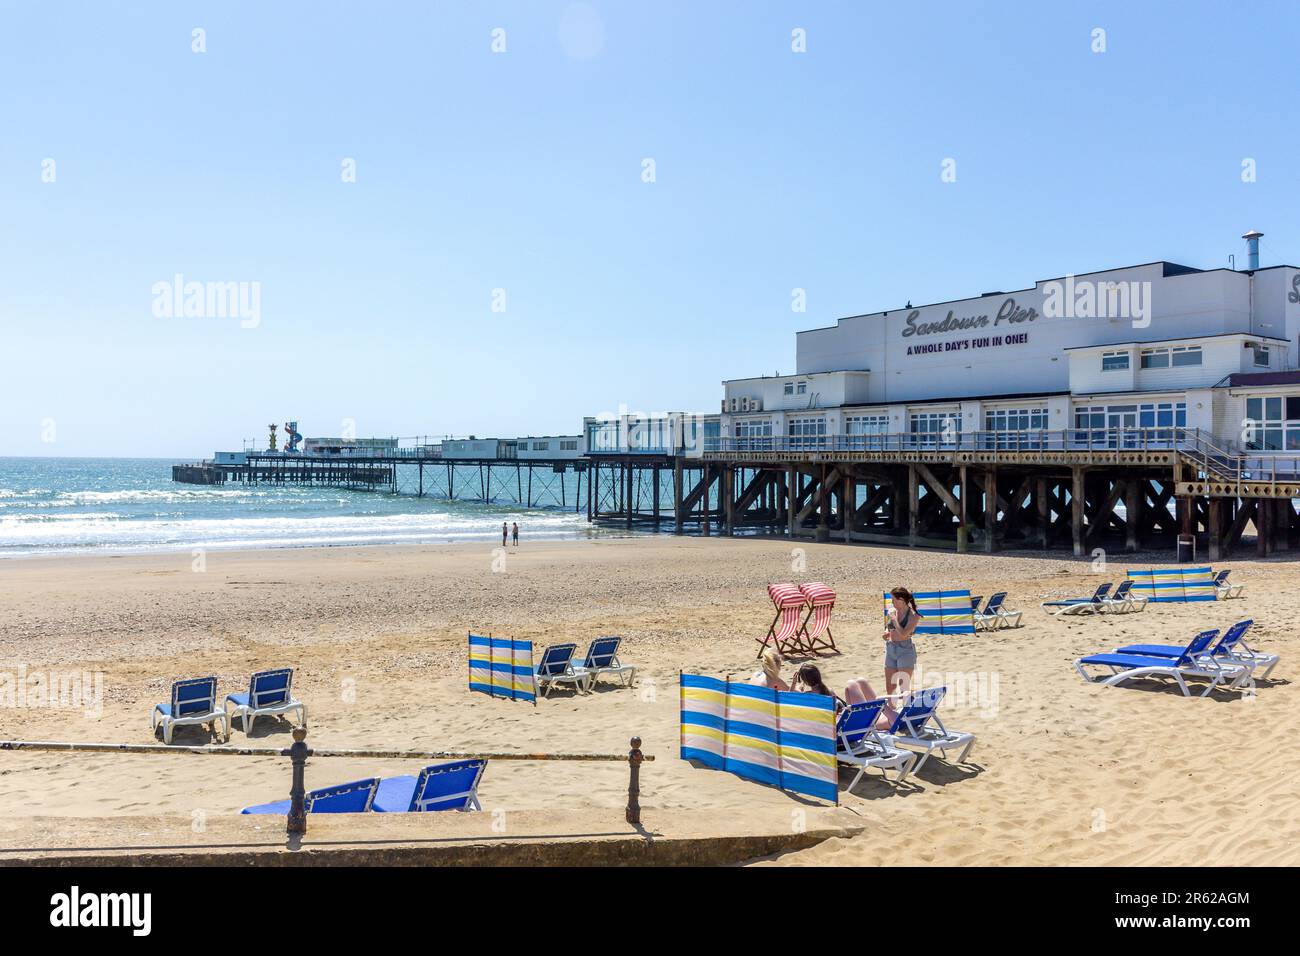 Jetée et plage de Sandown, Esplanade, Sandown, Île de Wight, Angleterre, Royaume-Uni Banque D'Images